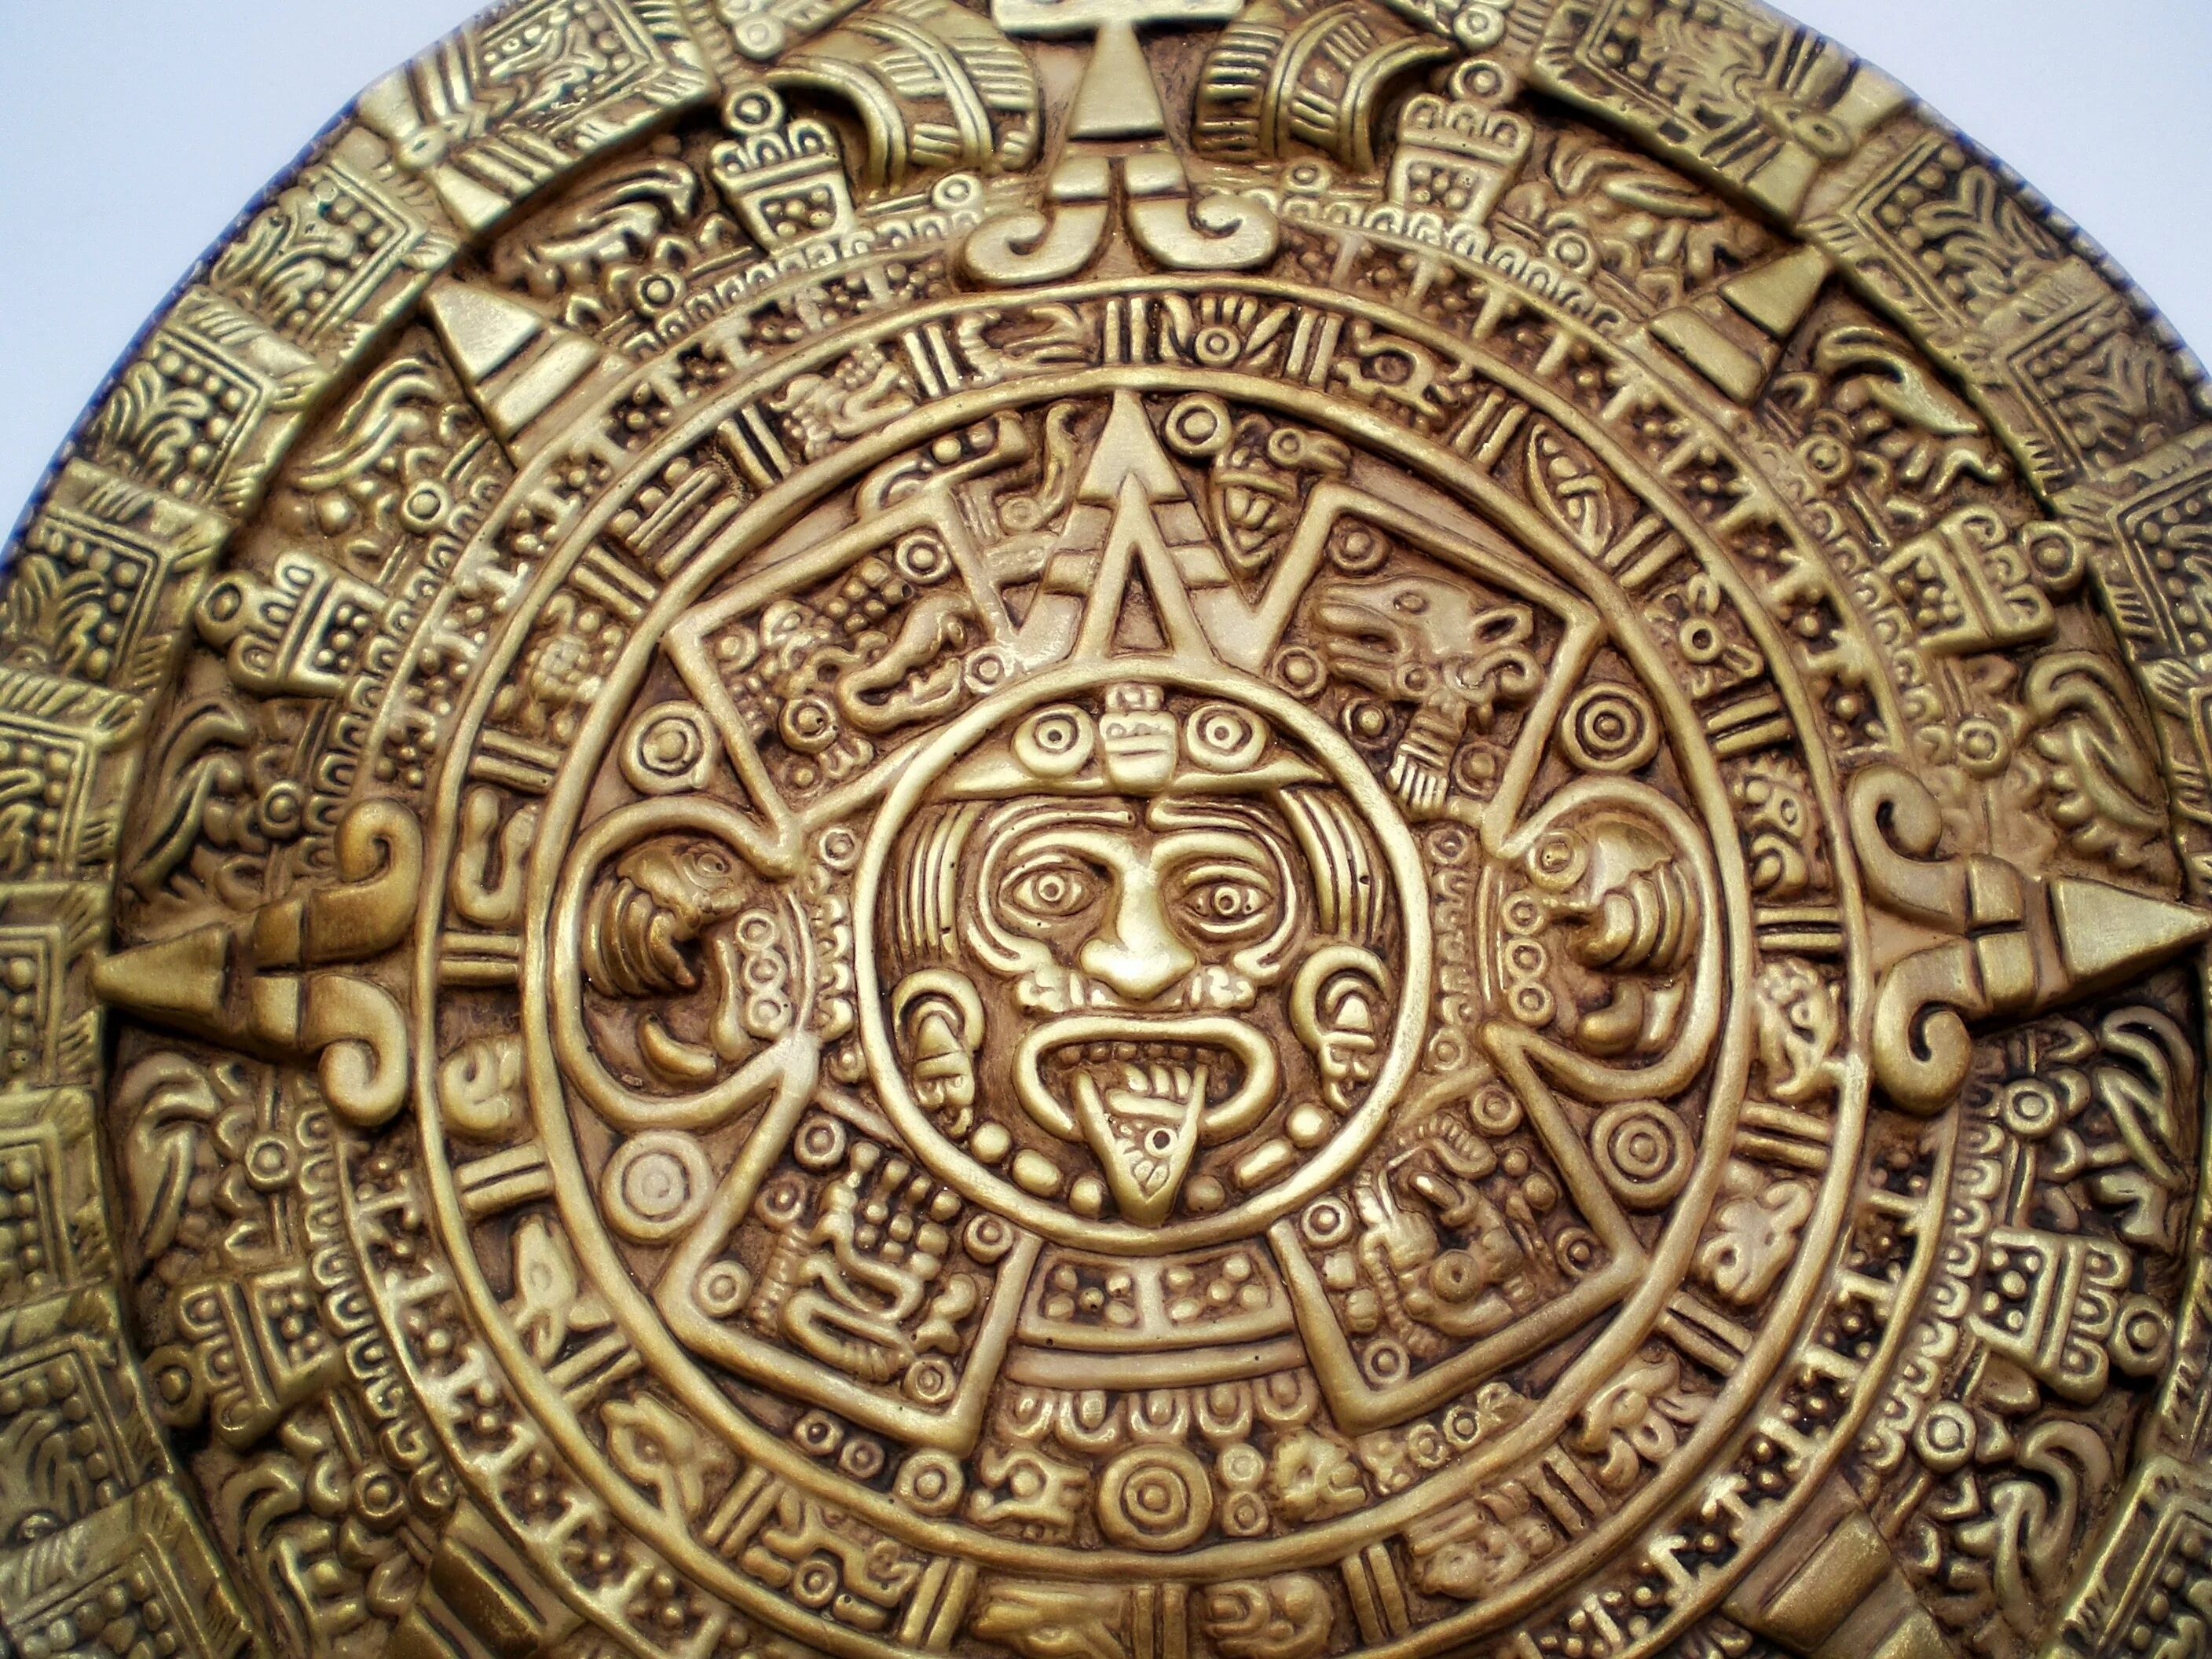 Календарь ма й я пересказ. Солнечный календарь Майя. Календарь индейцев Майя. Камень солнца ацтеков. Календарный круг Майя.